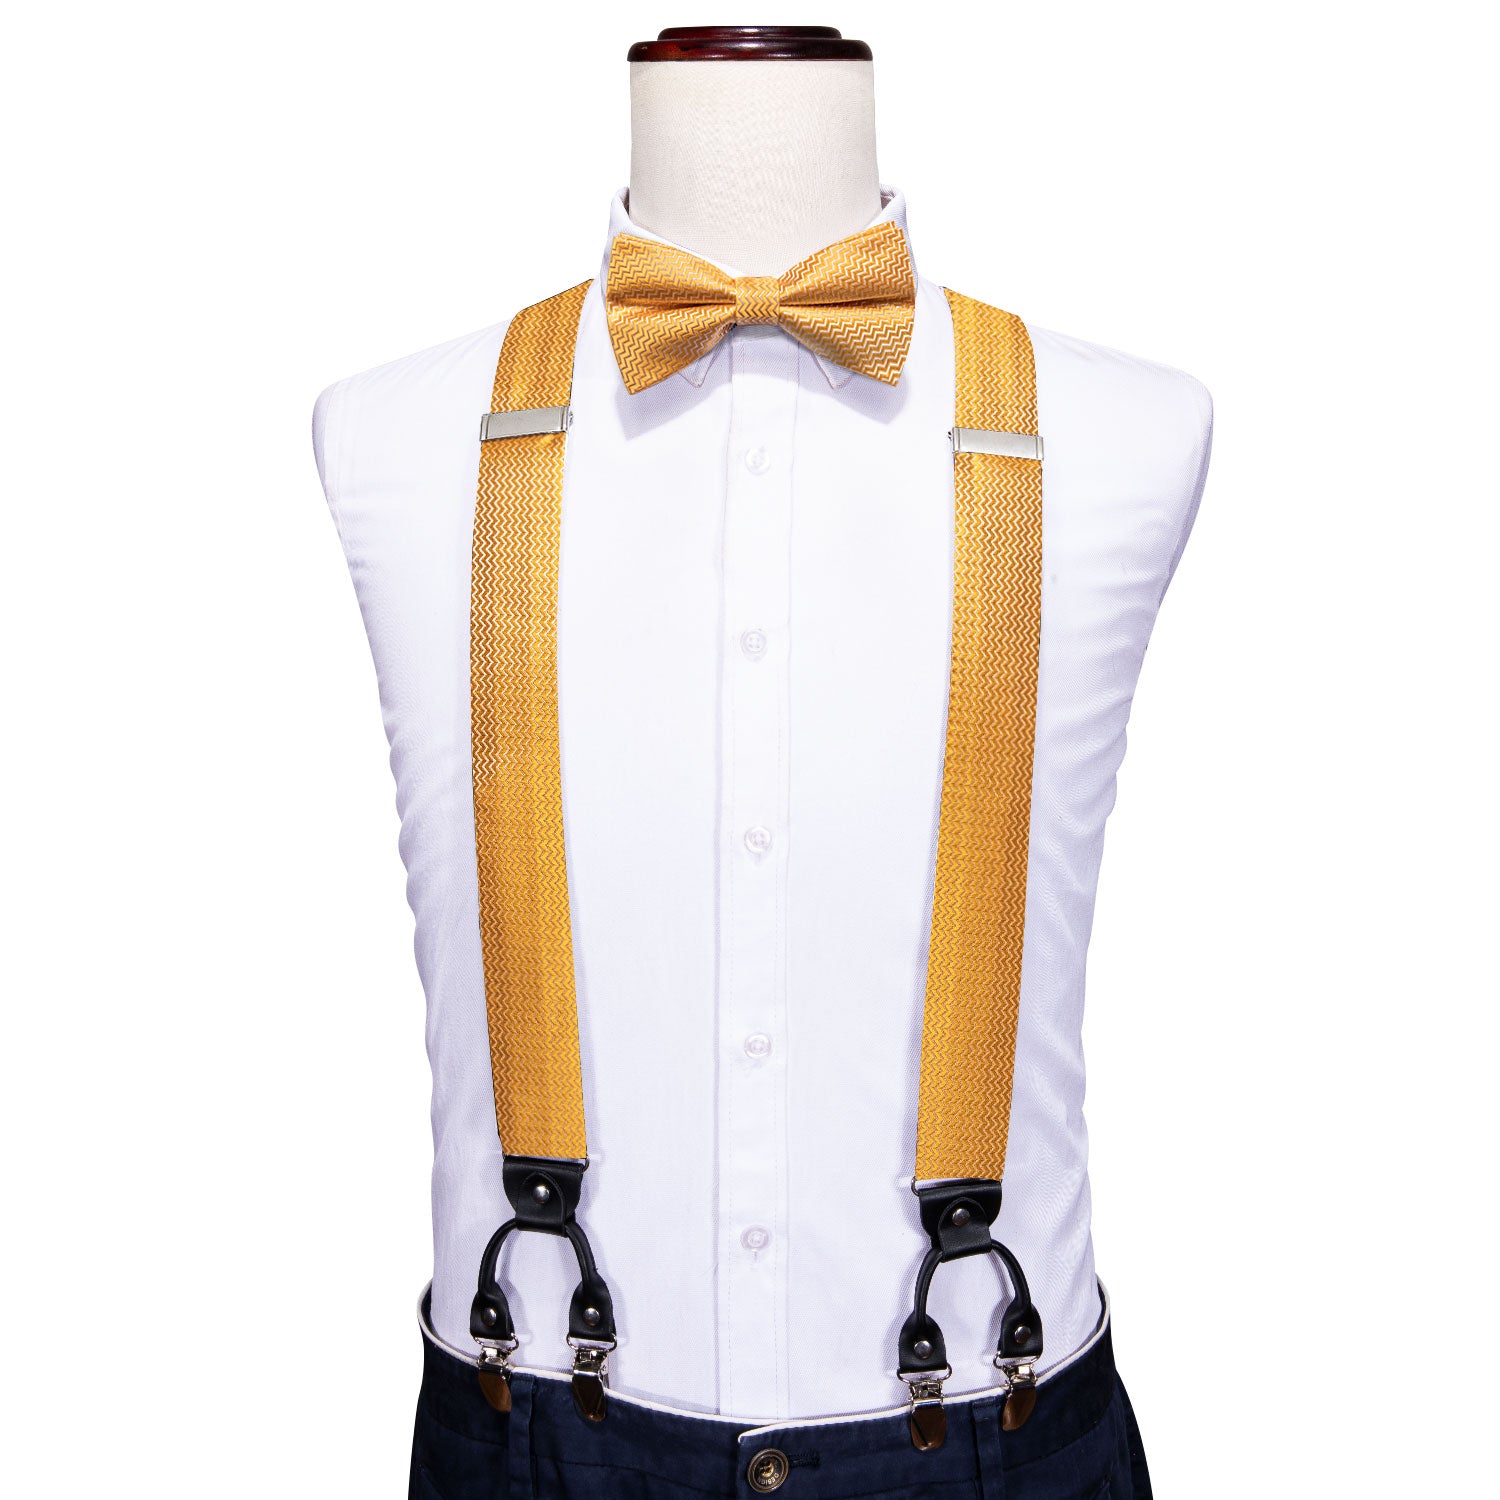 Yellow Bow Tie Solid Y Back Adjustable Bow Tie Suspenders Set